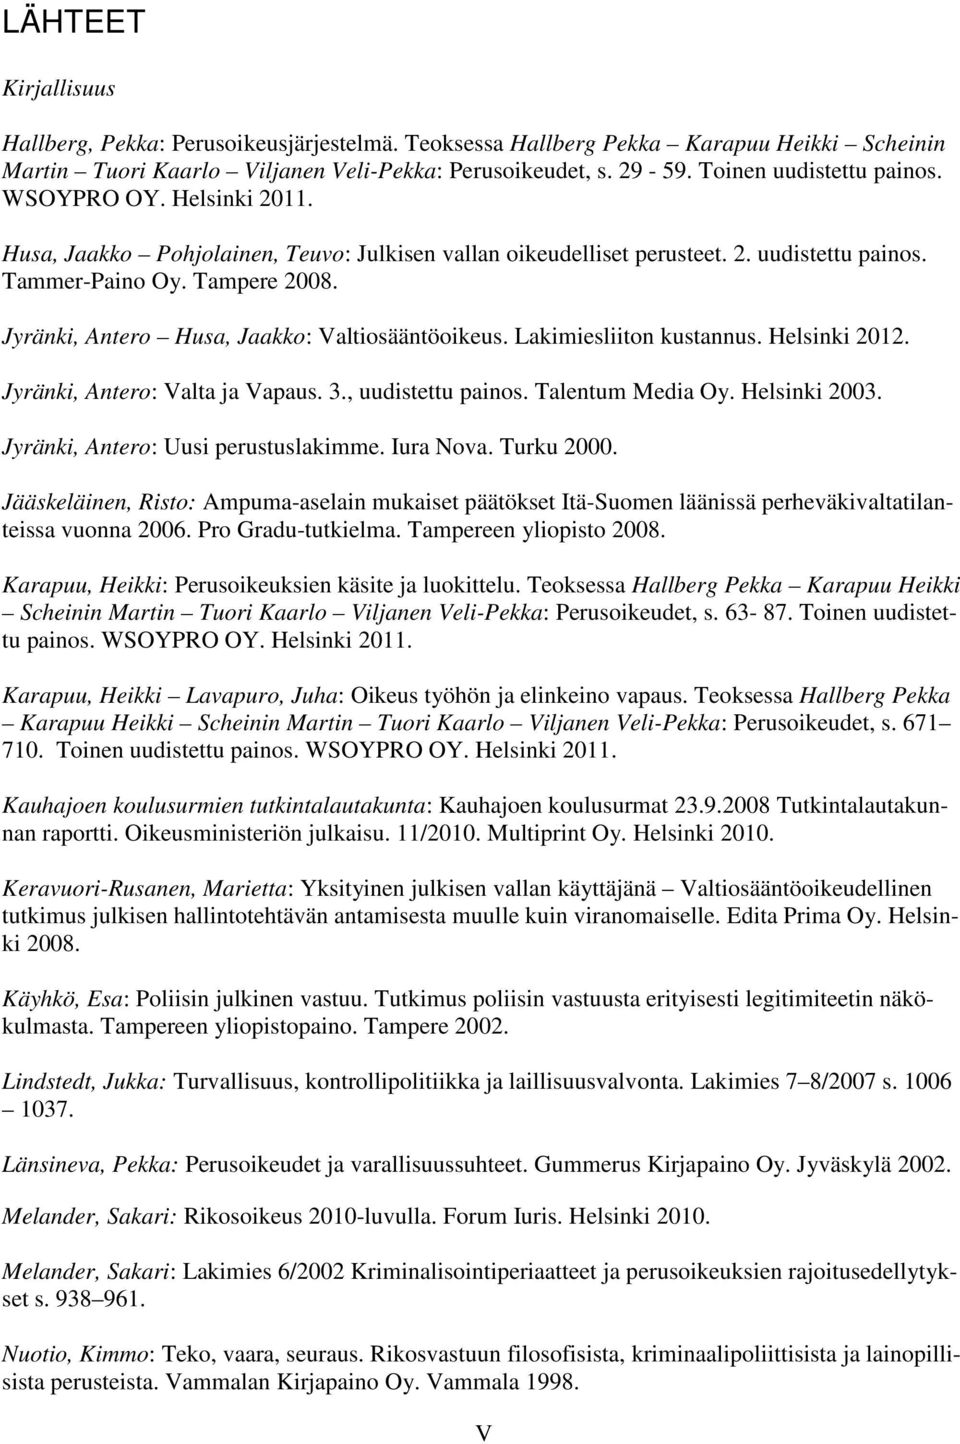 Jyränki, Antero Husa, Jaakko: Valtiosääntöoikeus. Lakimiesliiton kustannus. Helsinki 2012. Jyränki, Antero: Valta ja Vapaus. 3., uudistettu painos. Talentum Media Oy. Helsinki 2003.